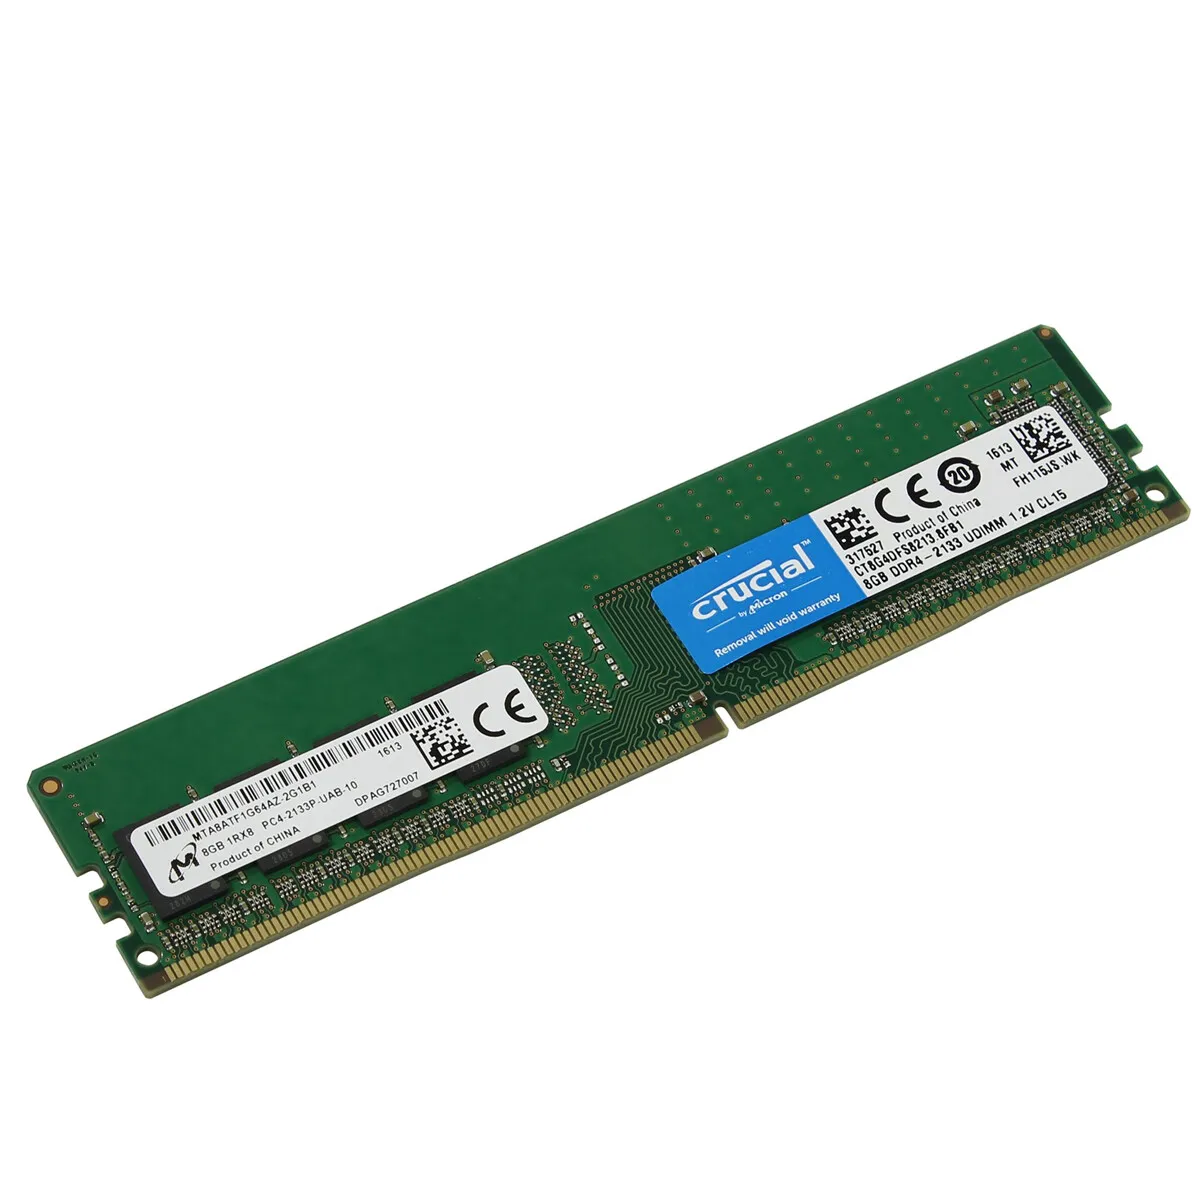 besøgende Beskrivelse honning Crucial DDR4 2133MHz CT8G4DFS8213 (PC4-17000) 8GB 1.2V CL15 Desktop RAM  Memory | eBay